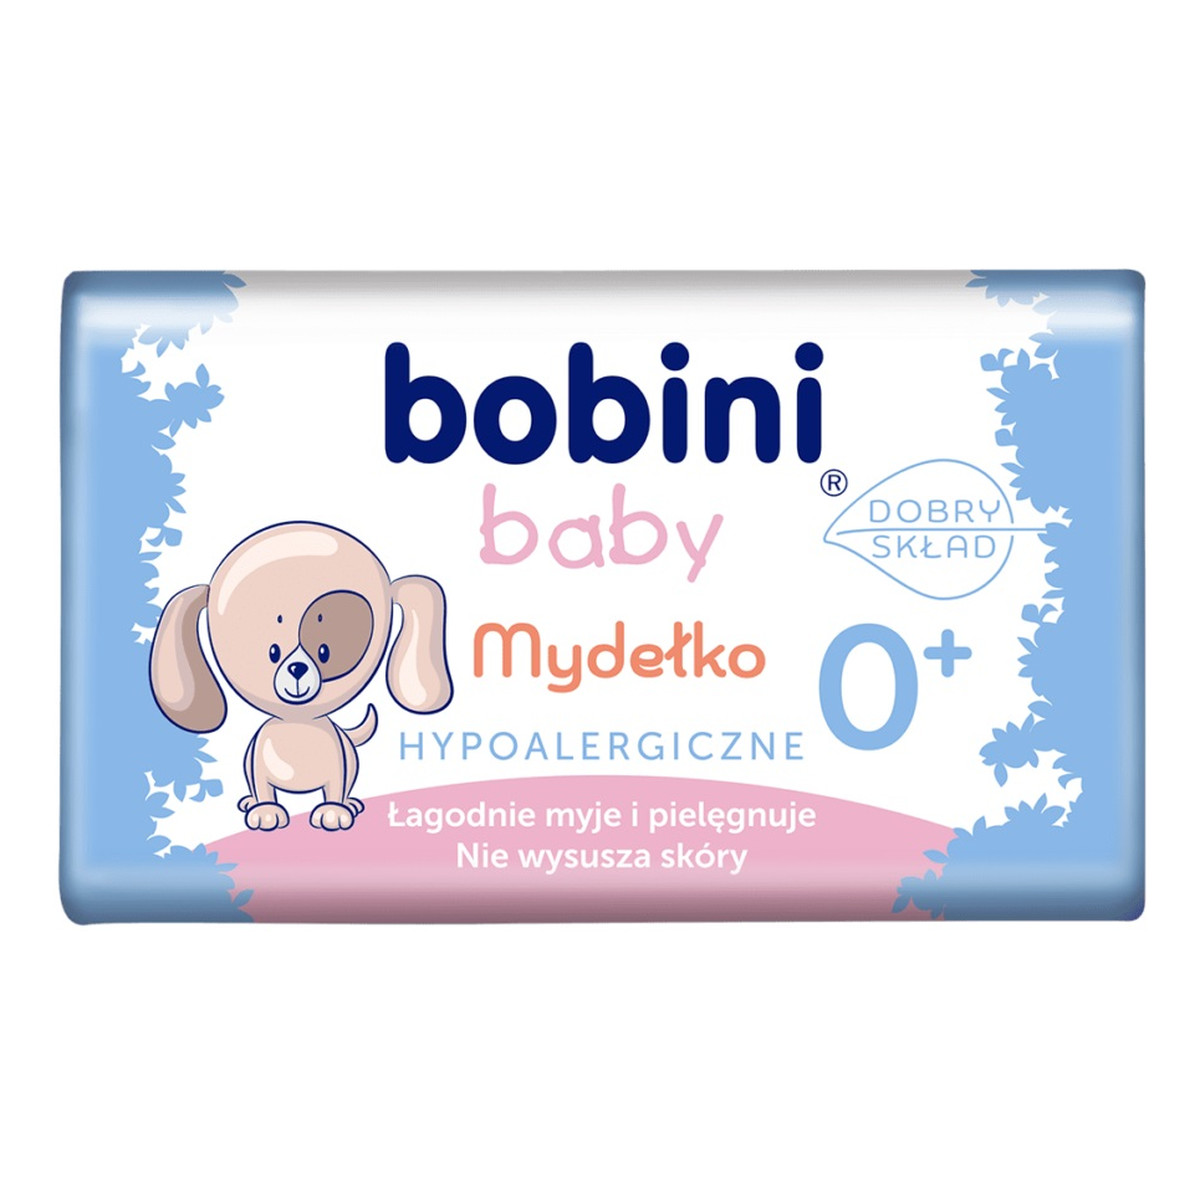 Bobini Baby mydełko w kostce hypoalergiczne 90g 90g